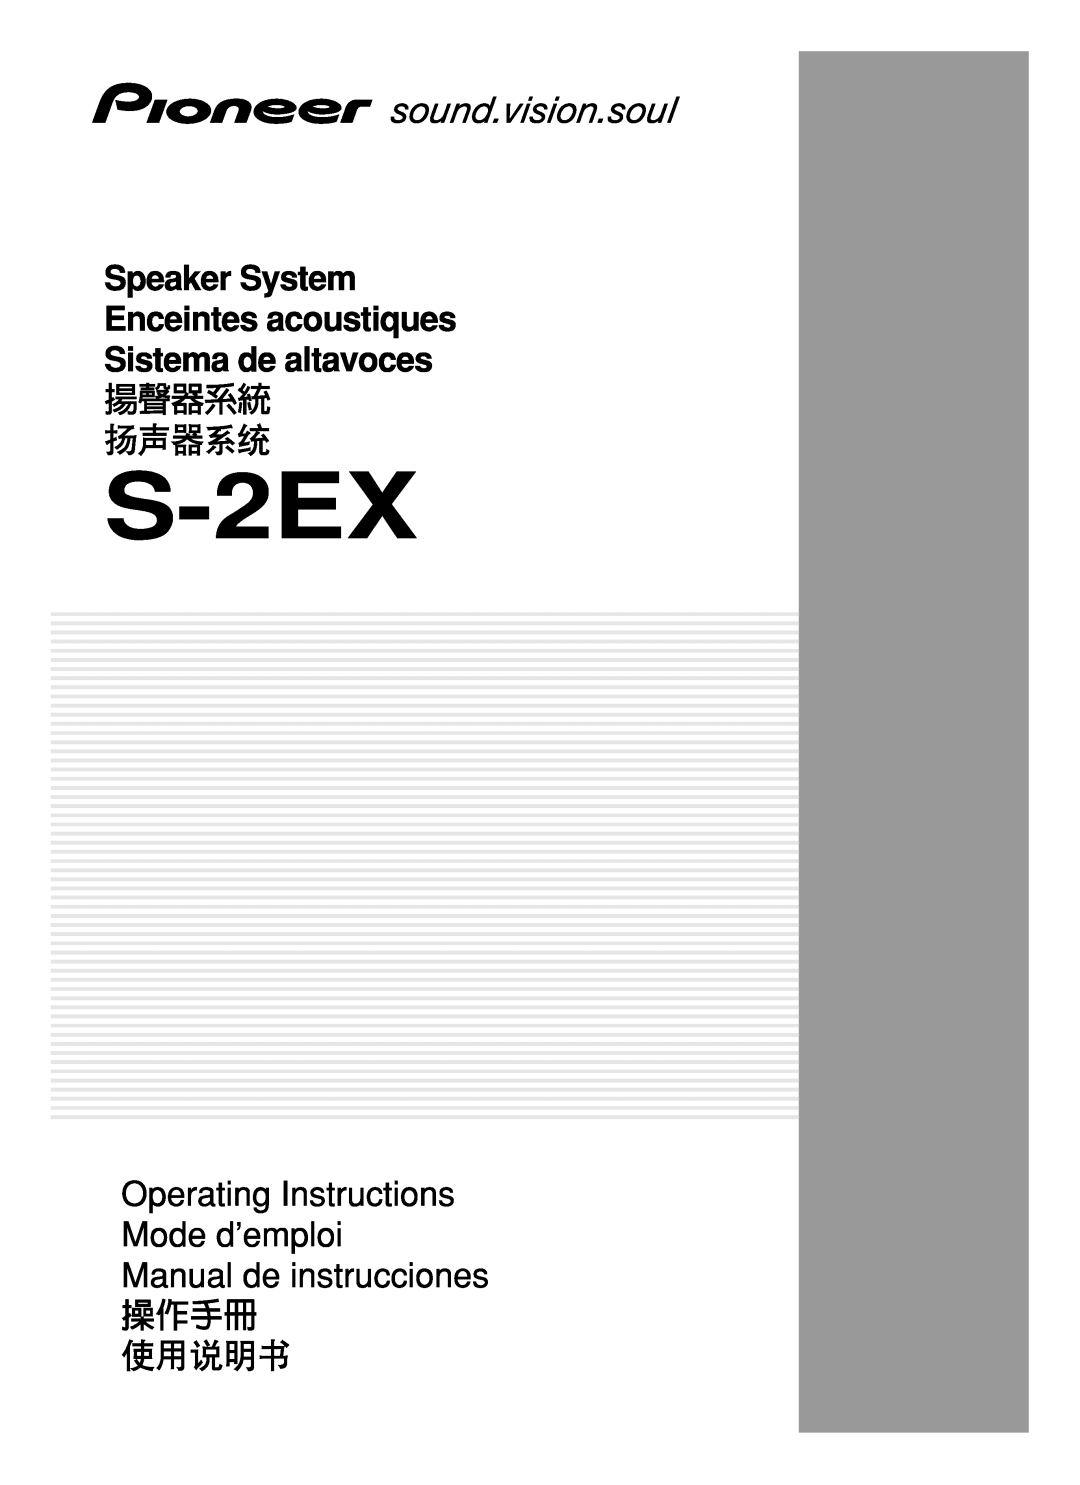 Pioneer S-2EX manual 